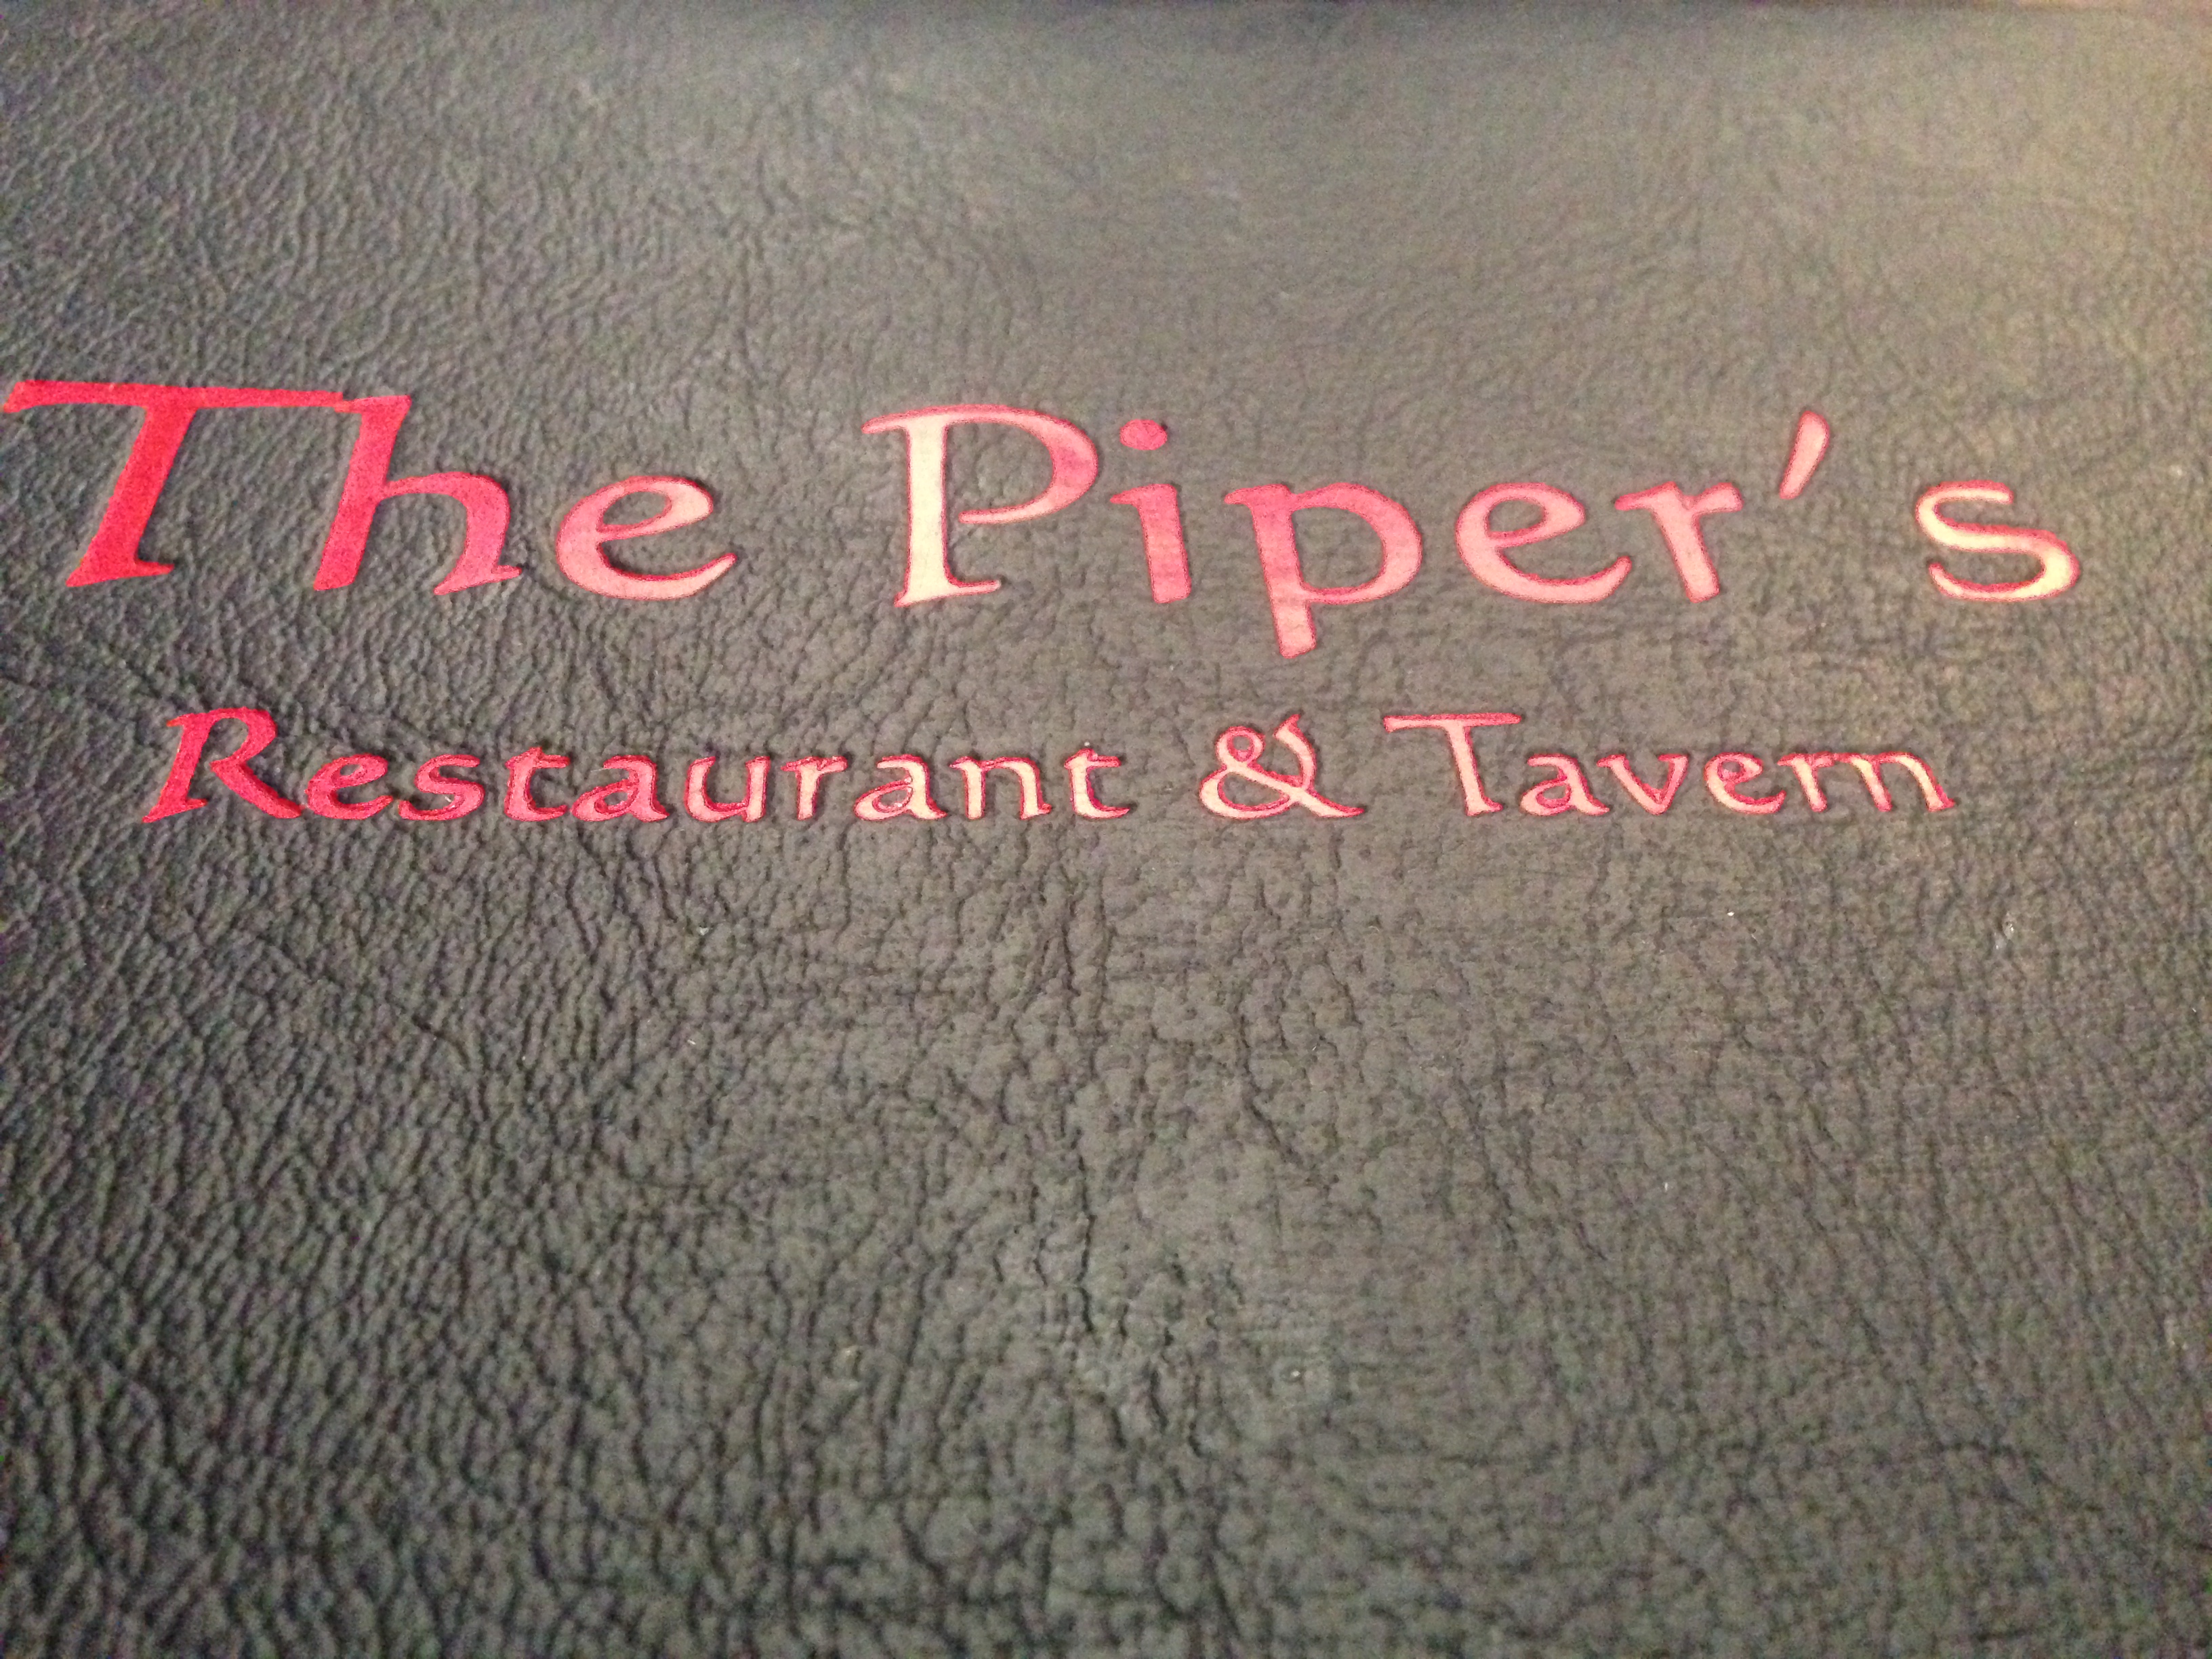 The Piper's Tavern menu